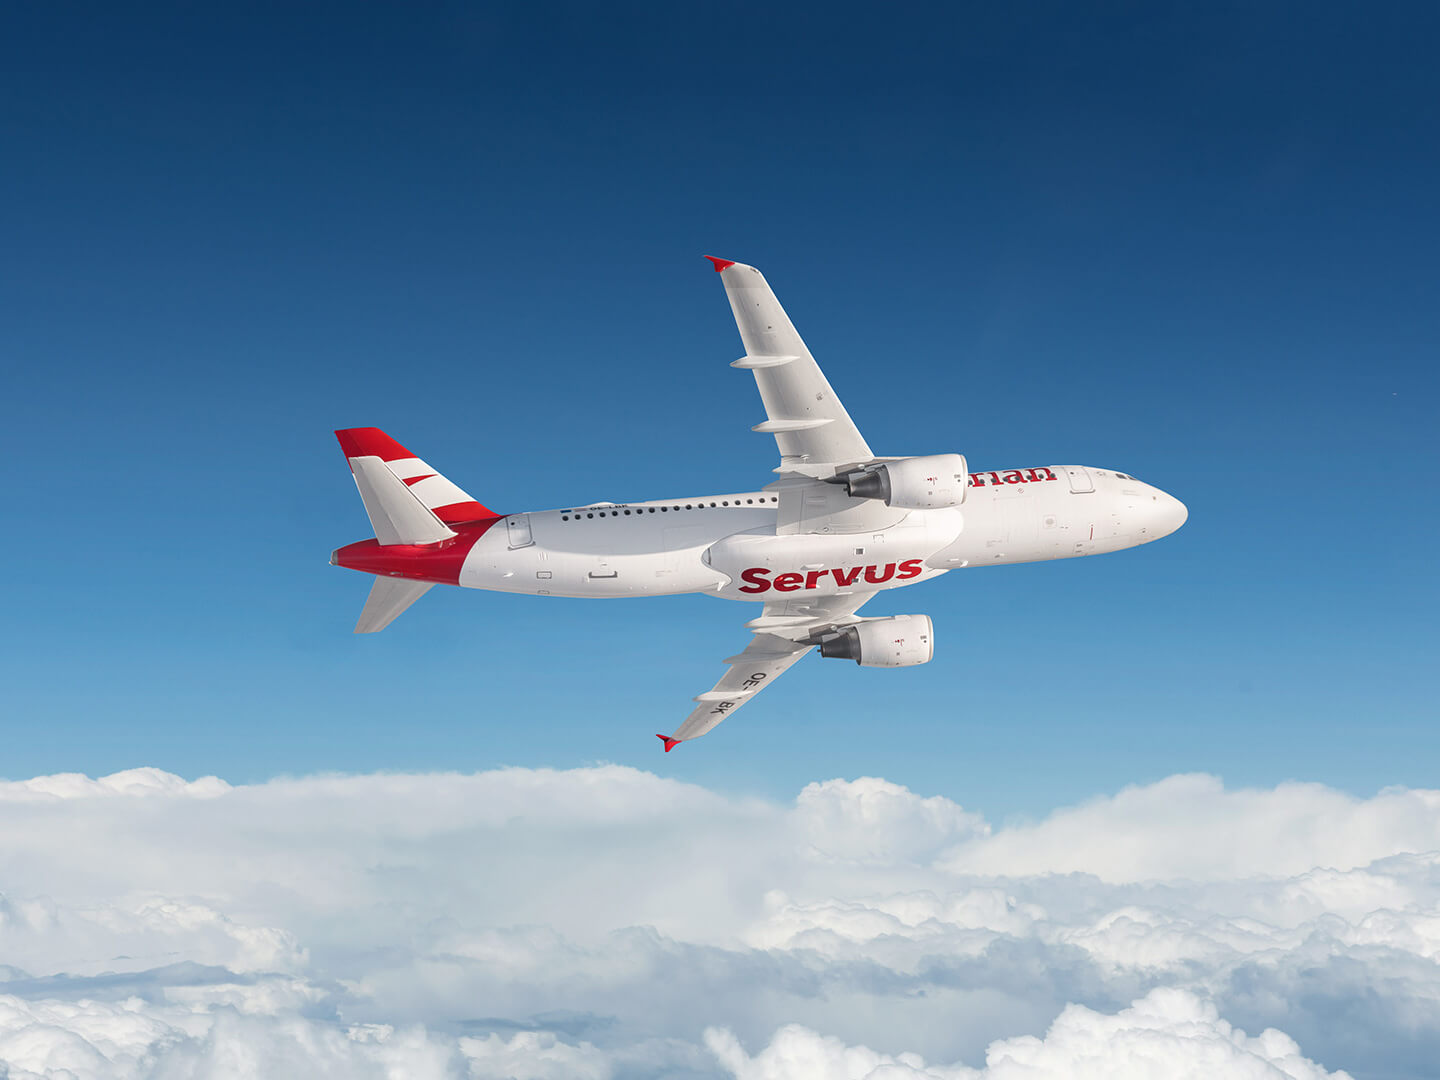 Photo: Services plane Austrian Airlines